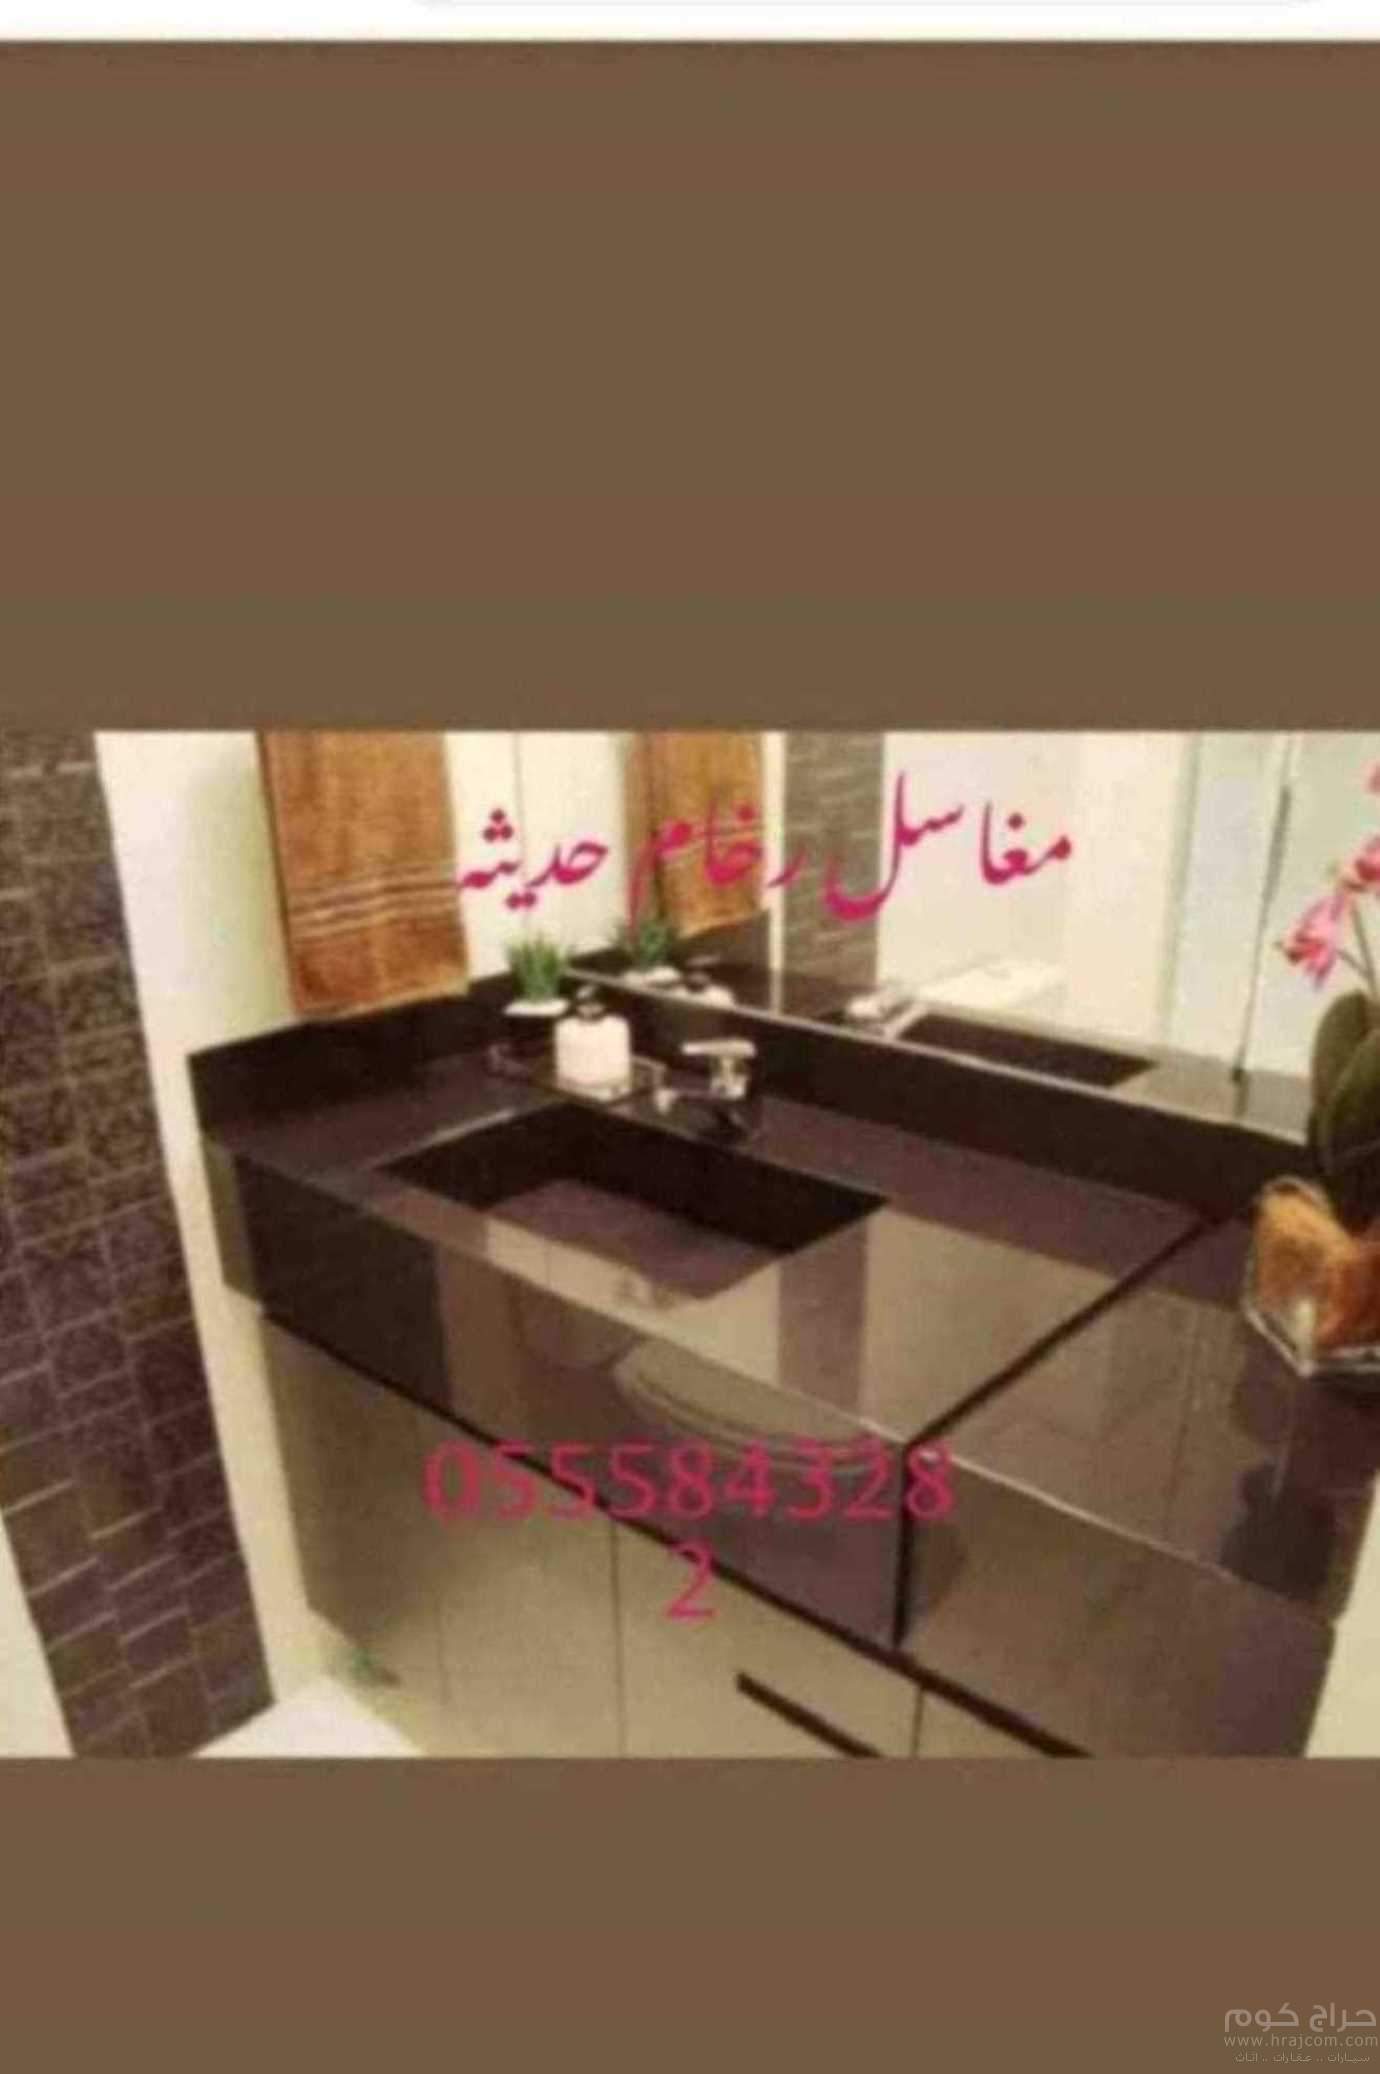 مغاسل رخام الرياض مغاسل حمامات منوعة